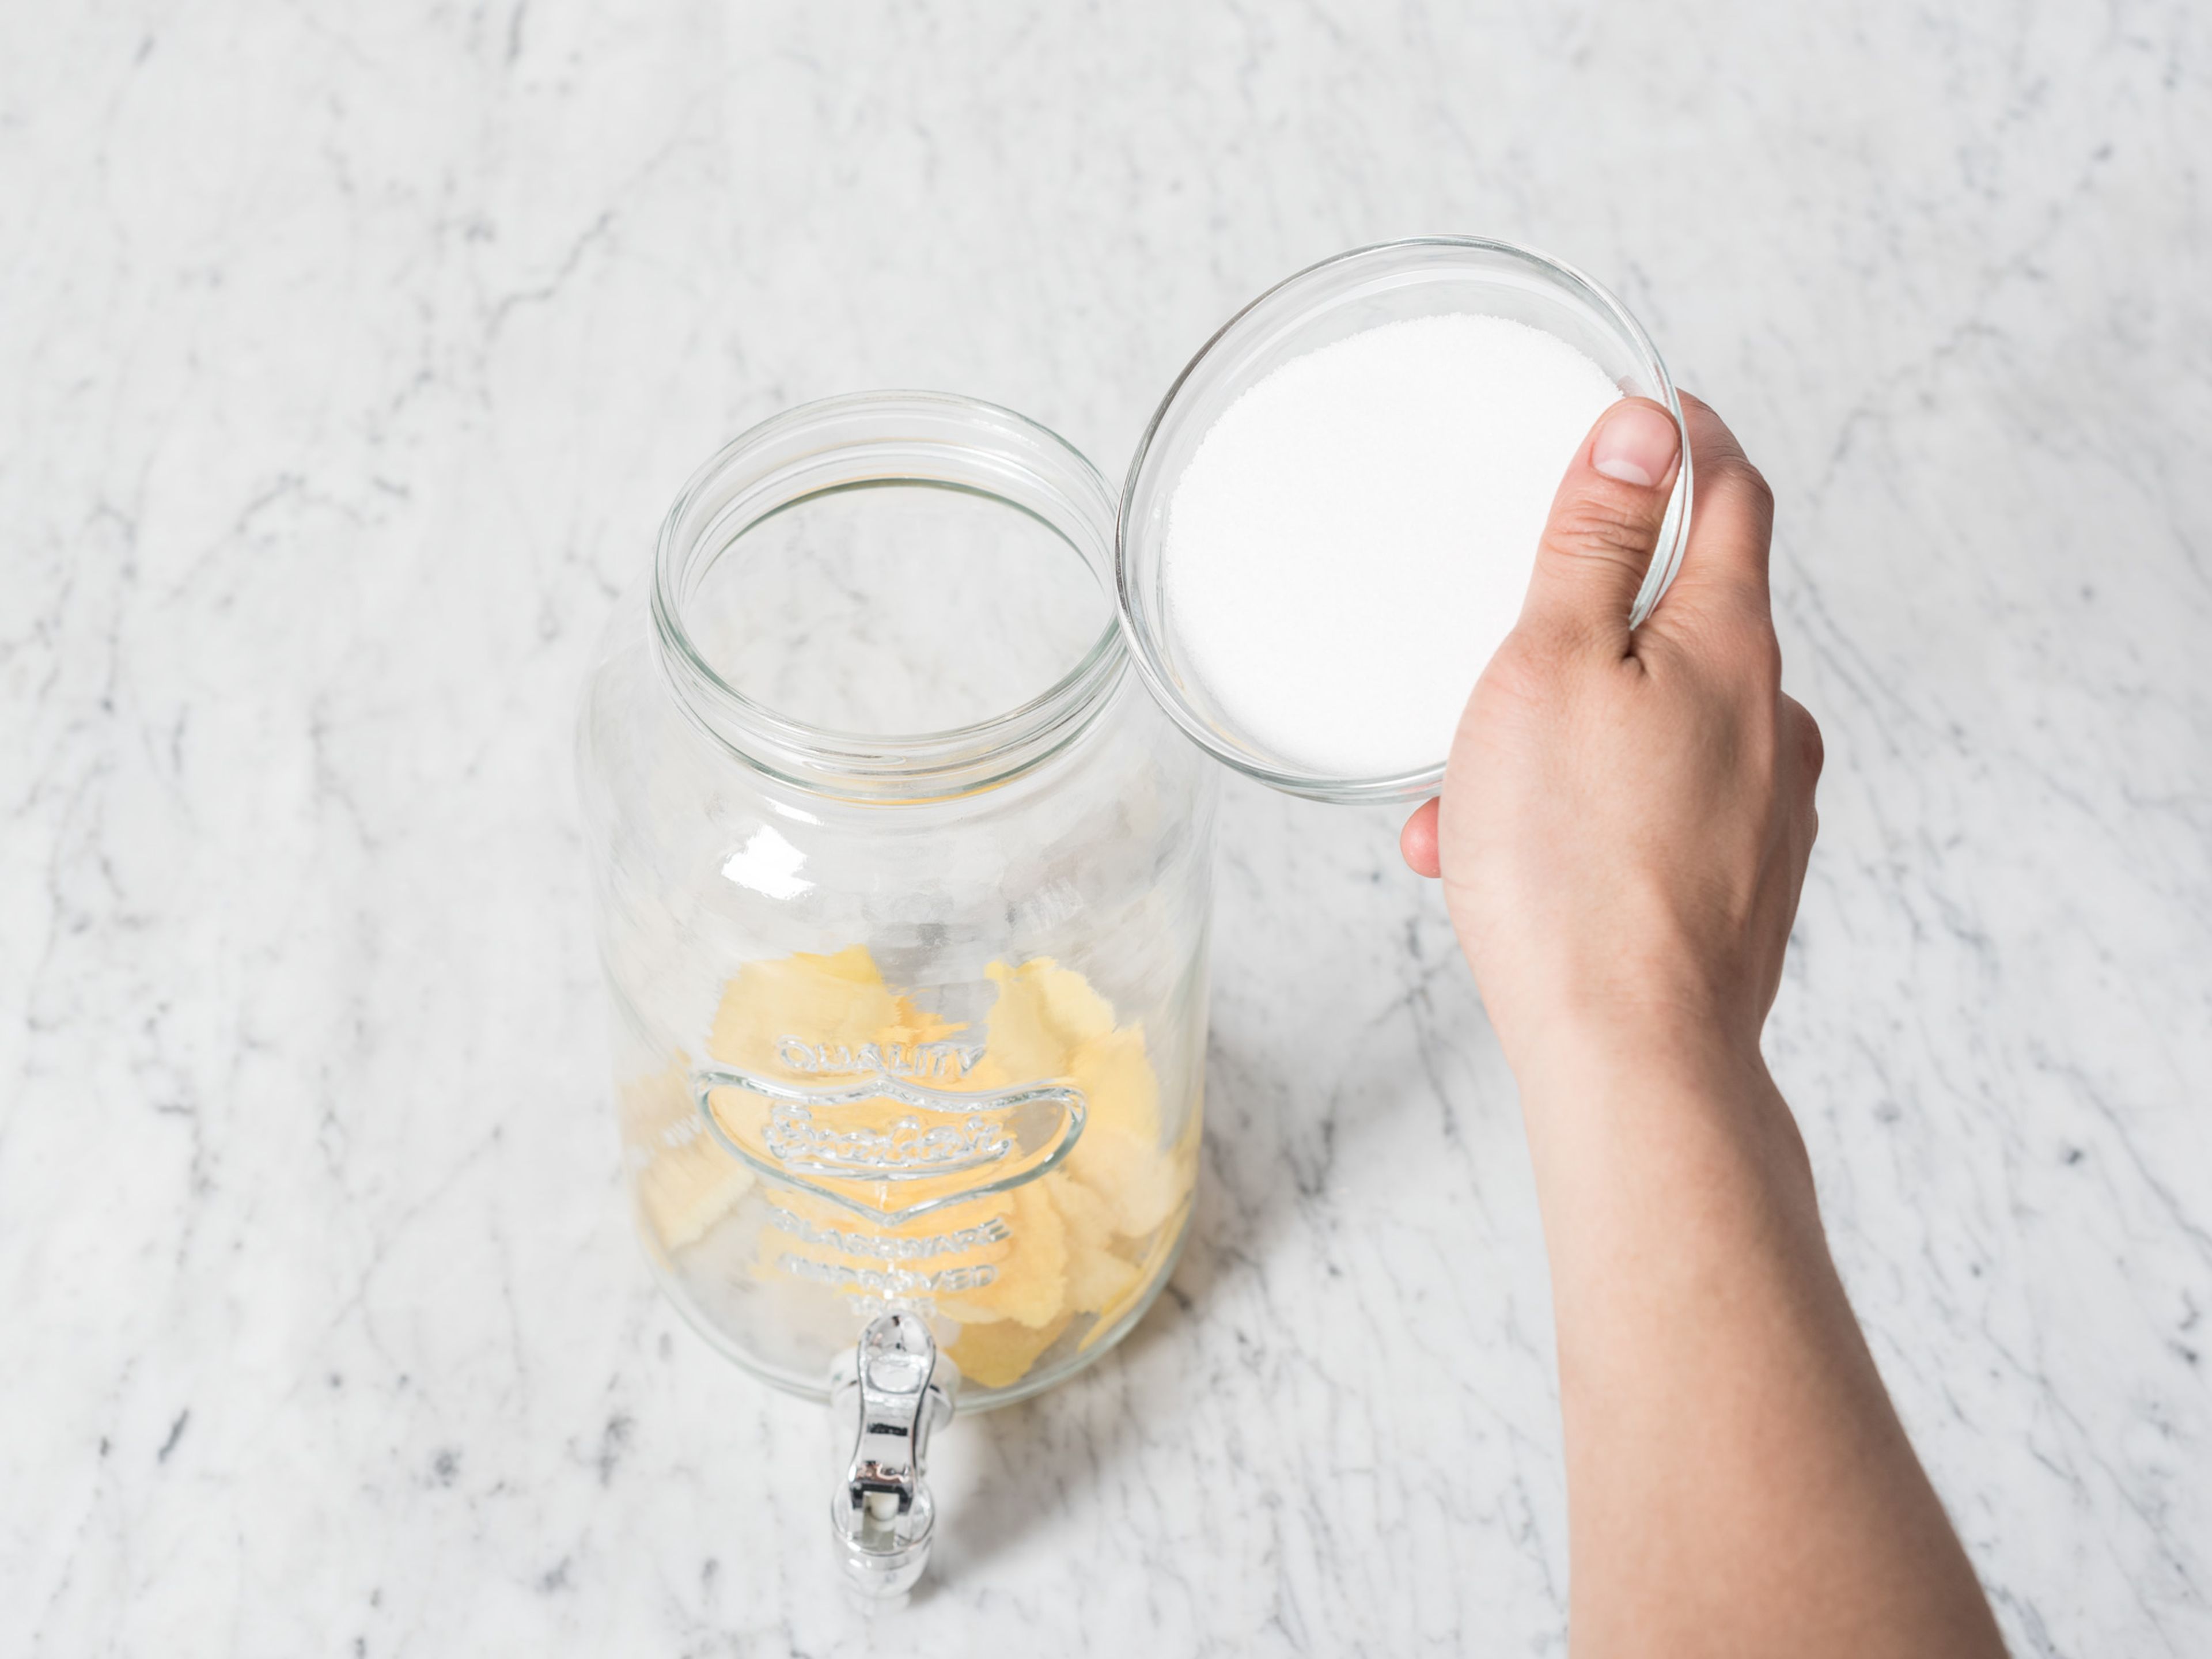 Die Schale von 2/3 der Zitronen schälen. Alle Zitronen auspressen. Zitronenschalen und Zucker in einen großen Krug geben und ca. 15 Min. stehen lassen.